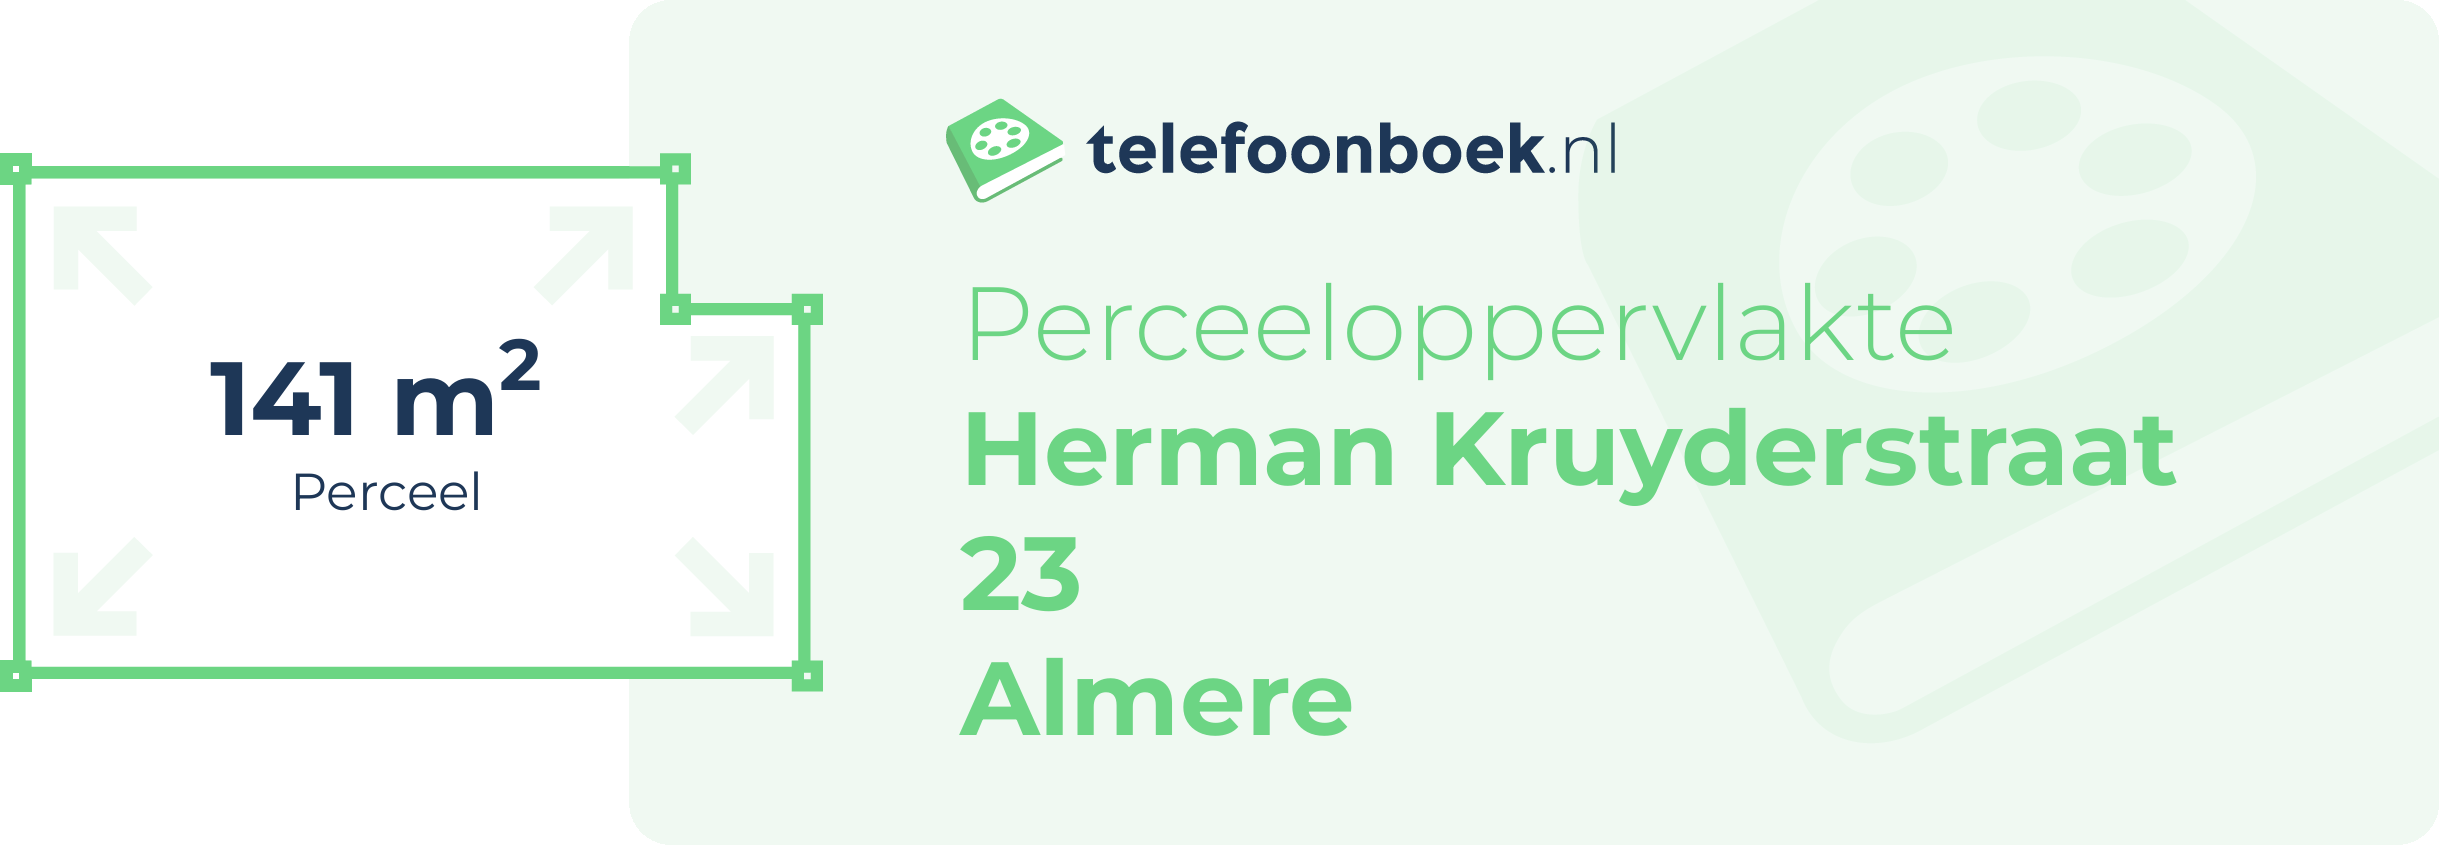 Perceeloppervlakte Herman Kruyderstraat 23 Almere